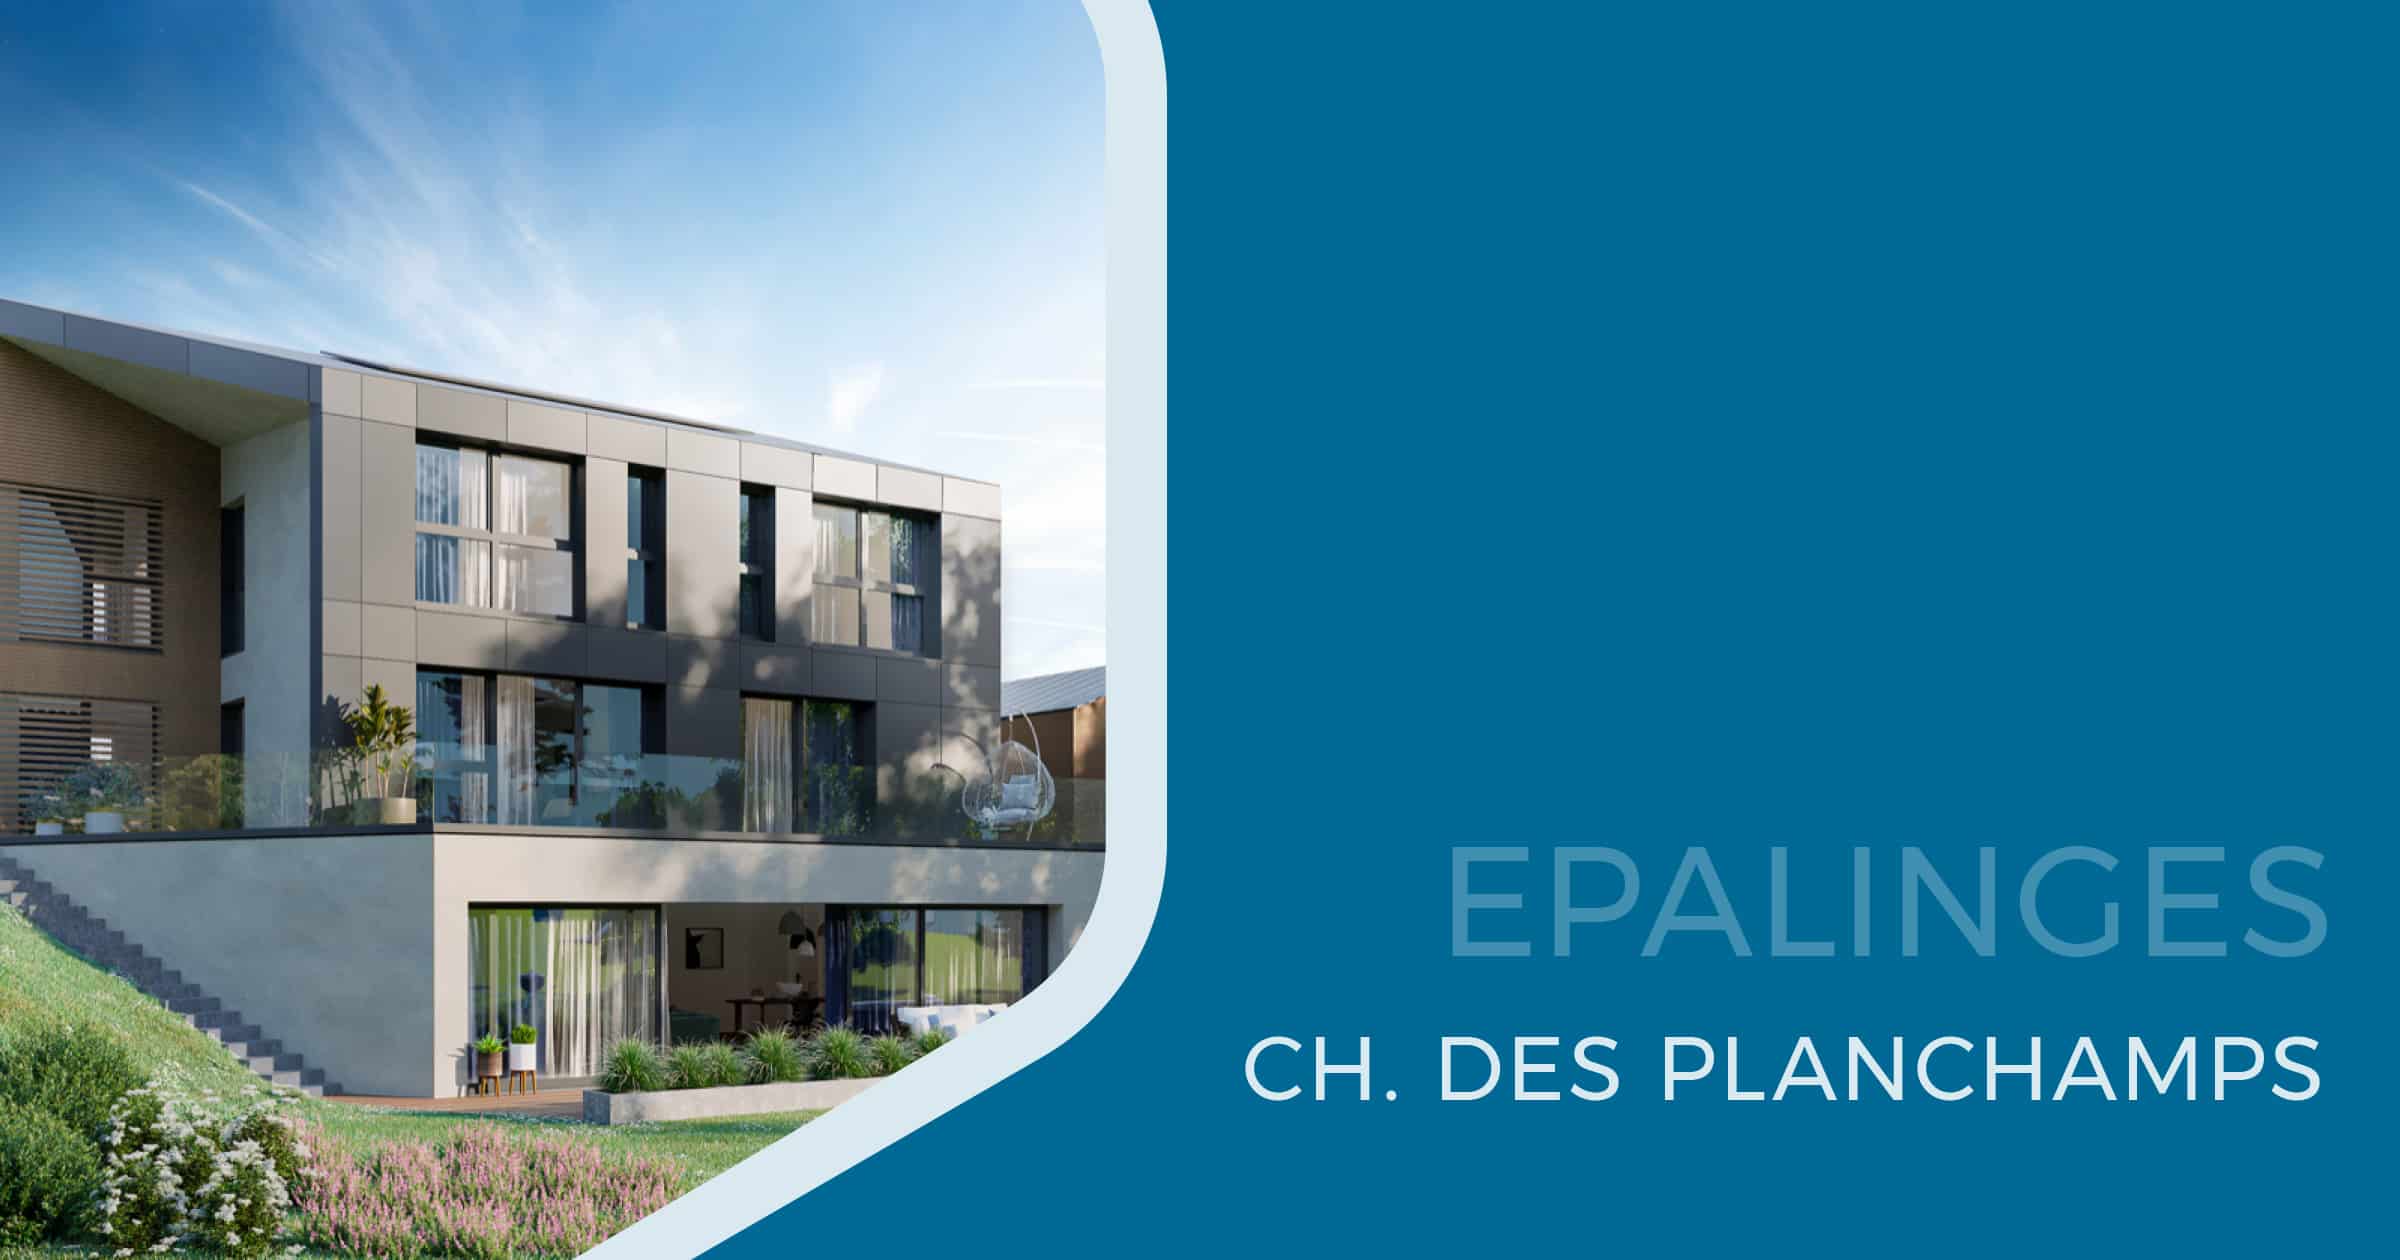 Epalinges - Ch. des Planchamps